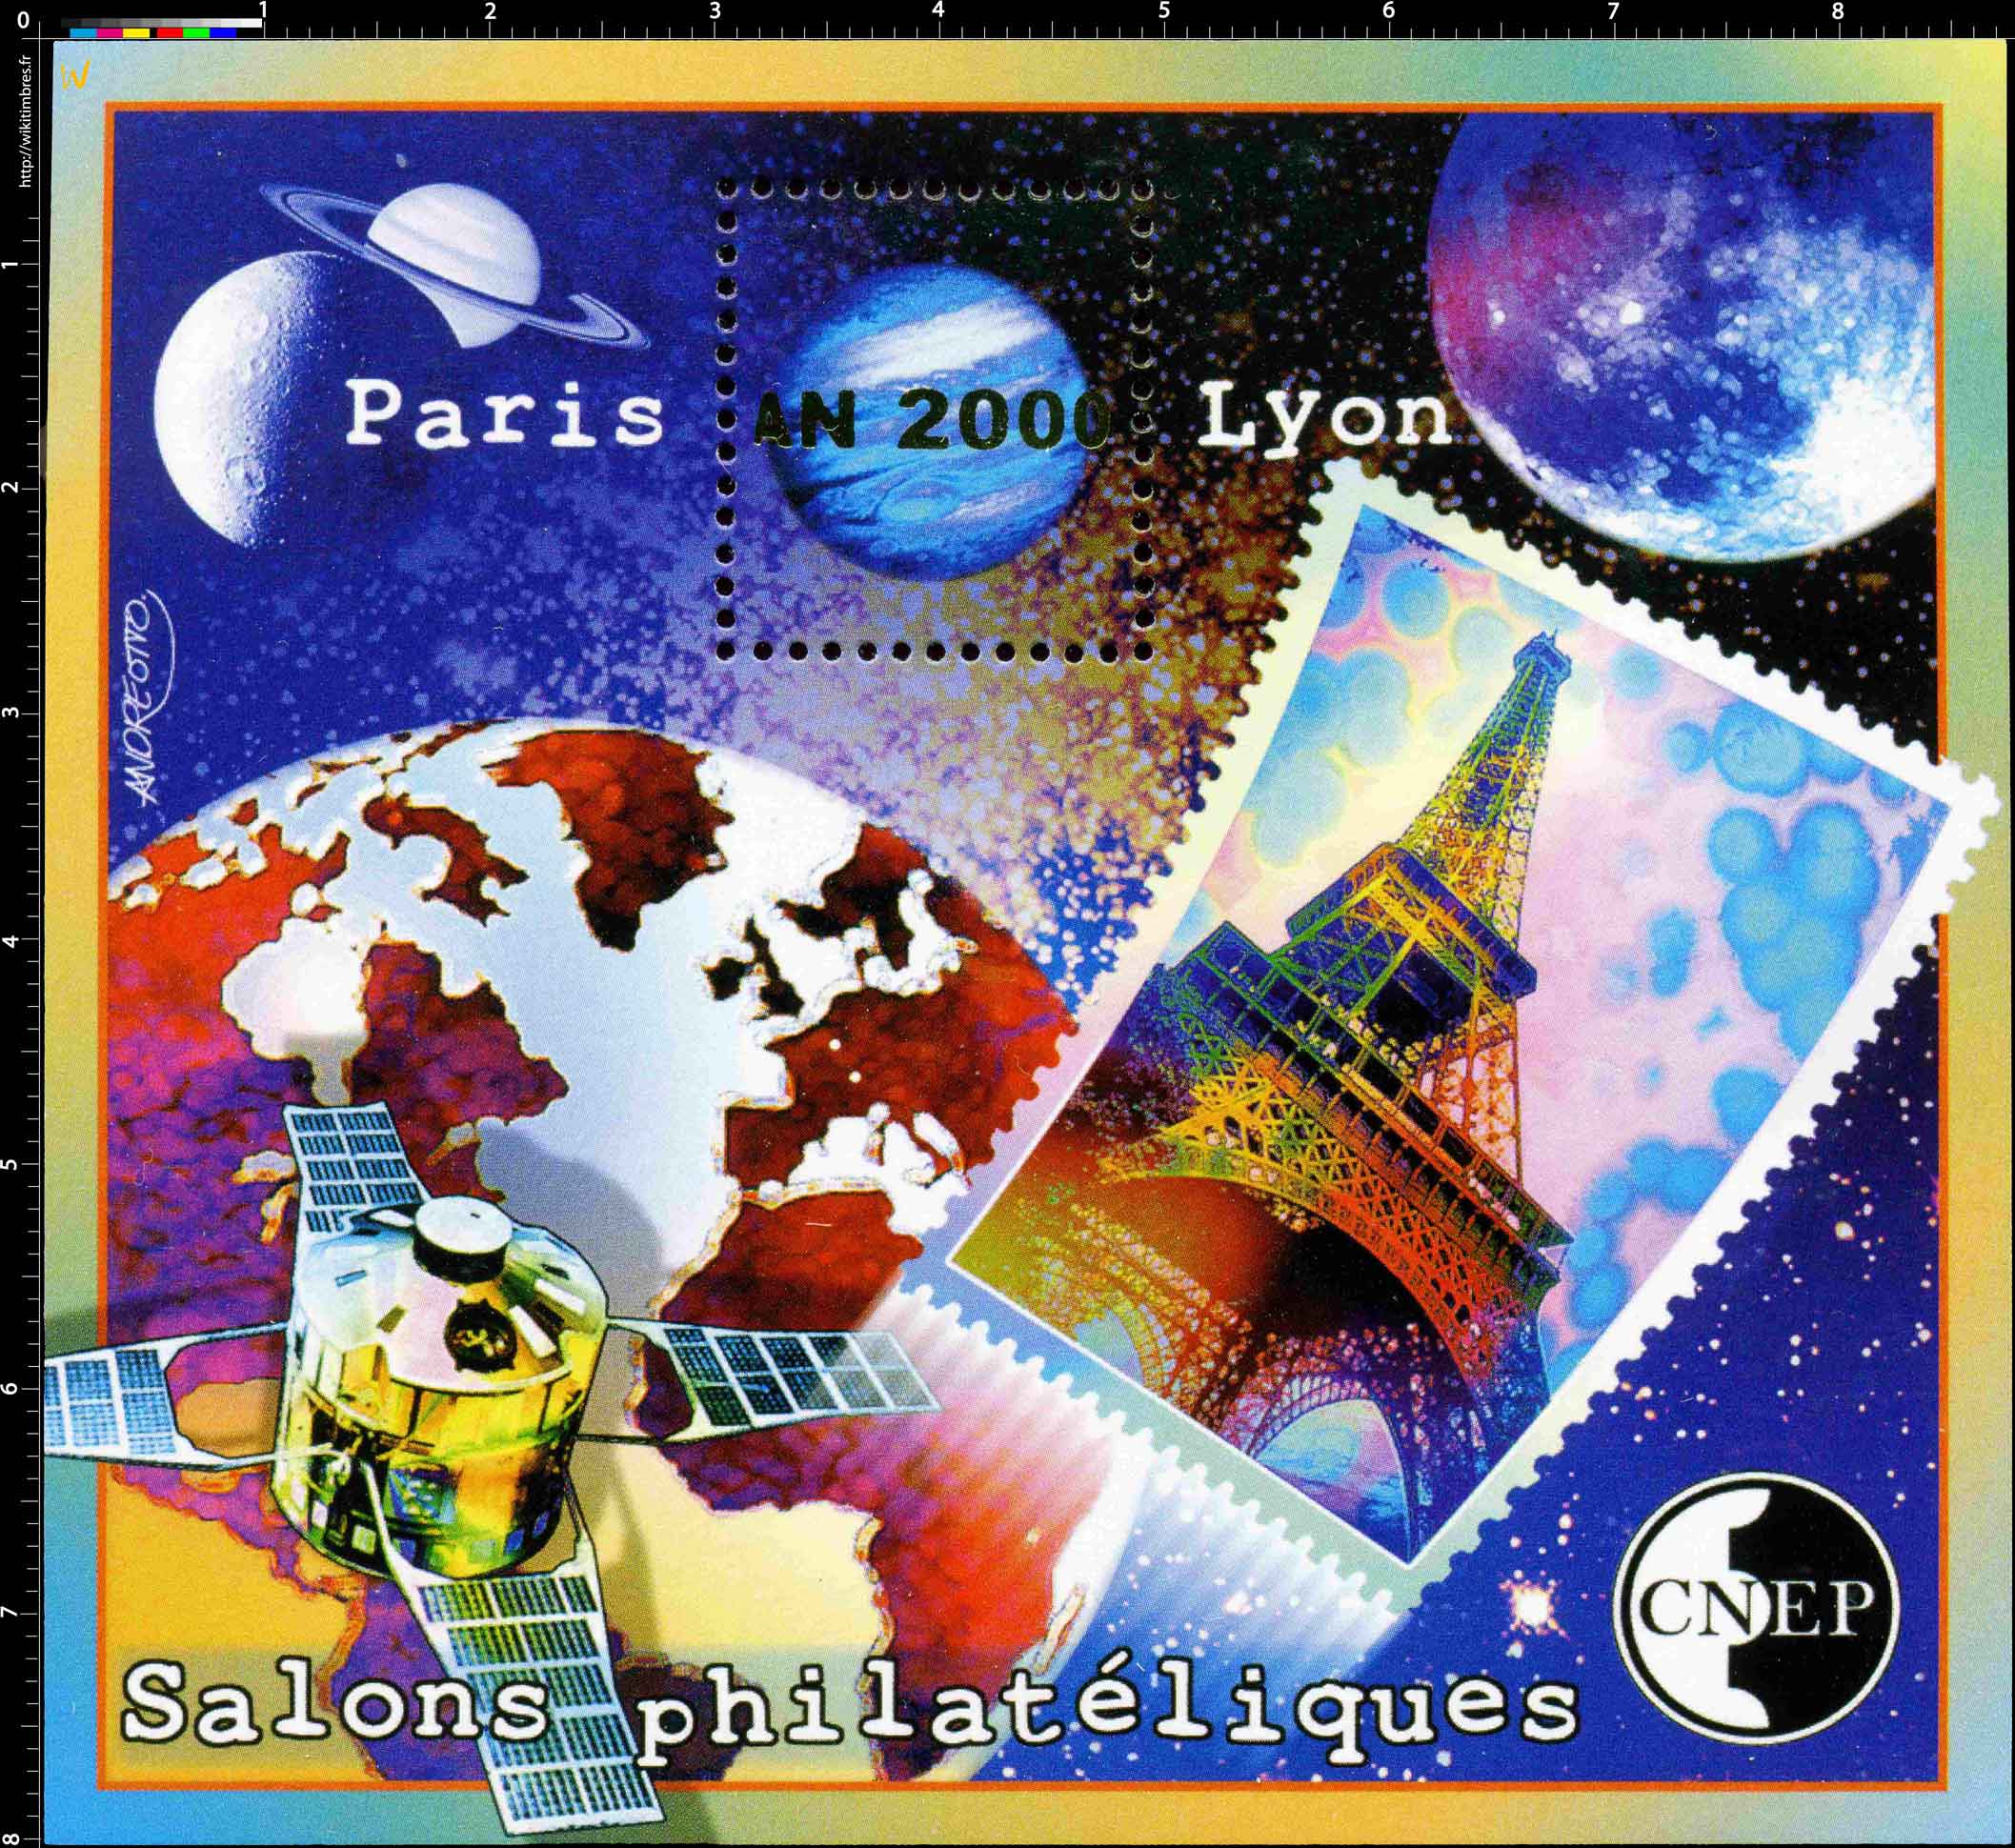 2000 Salons philatéliques Paris An 2000 Lyon CNEP